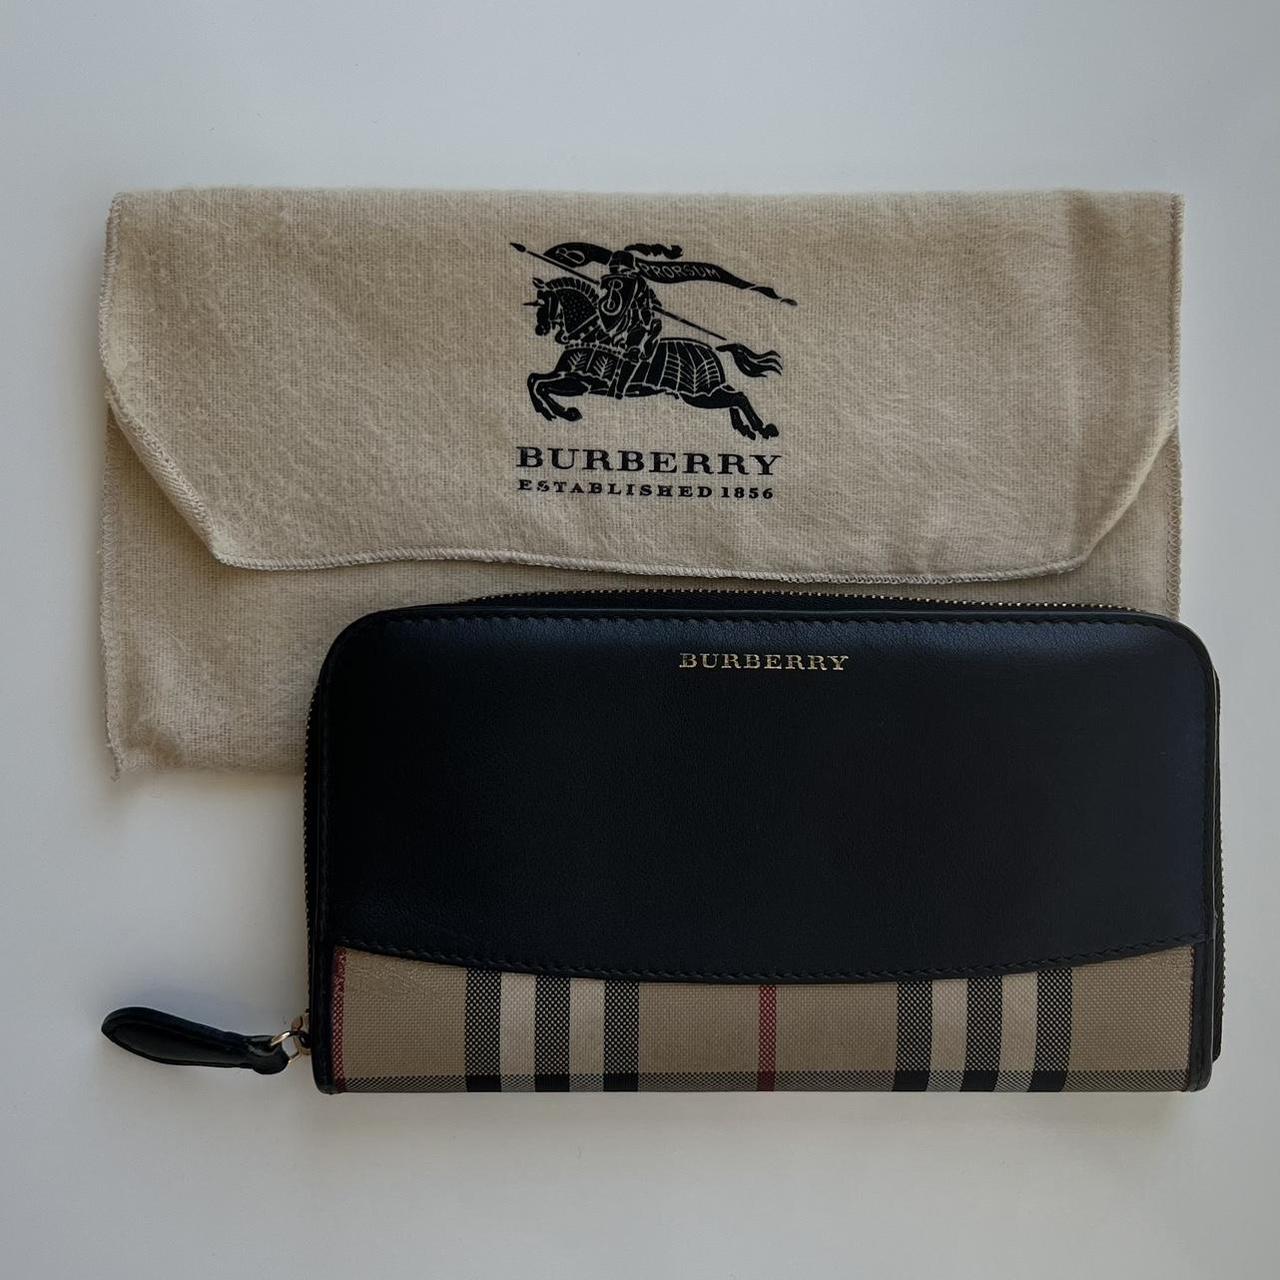 Burberry Women's Wallets - Tan